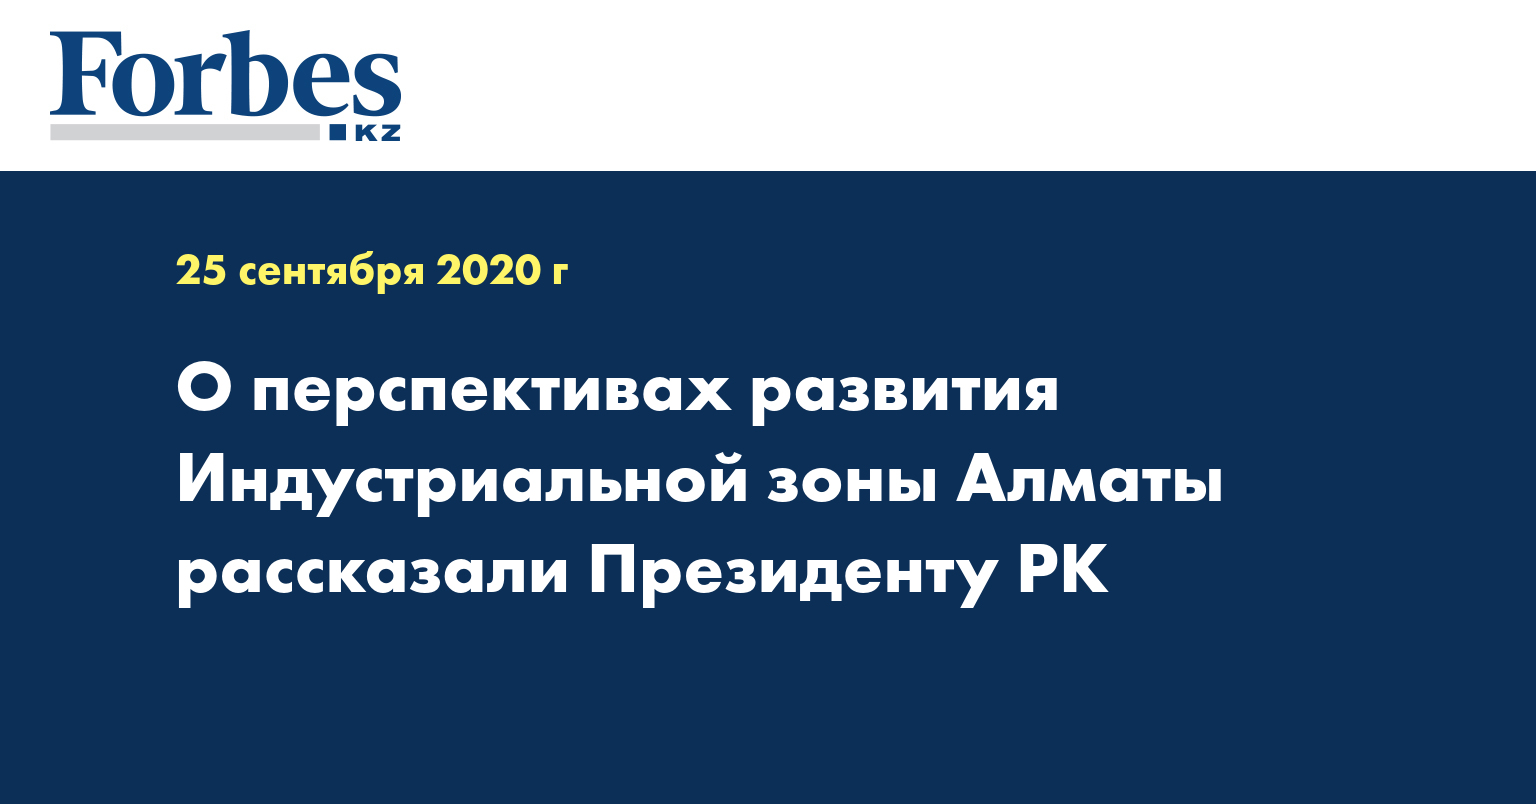 О перспективах развития Индустриальной зоны Алматы рассказали Президенту РК